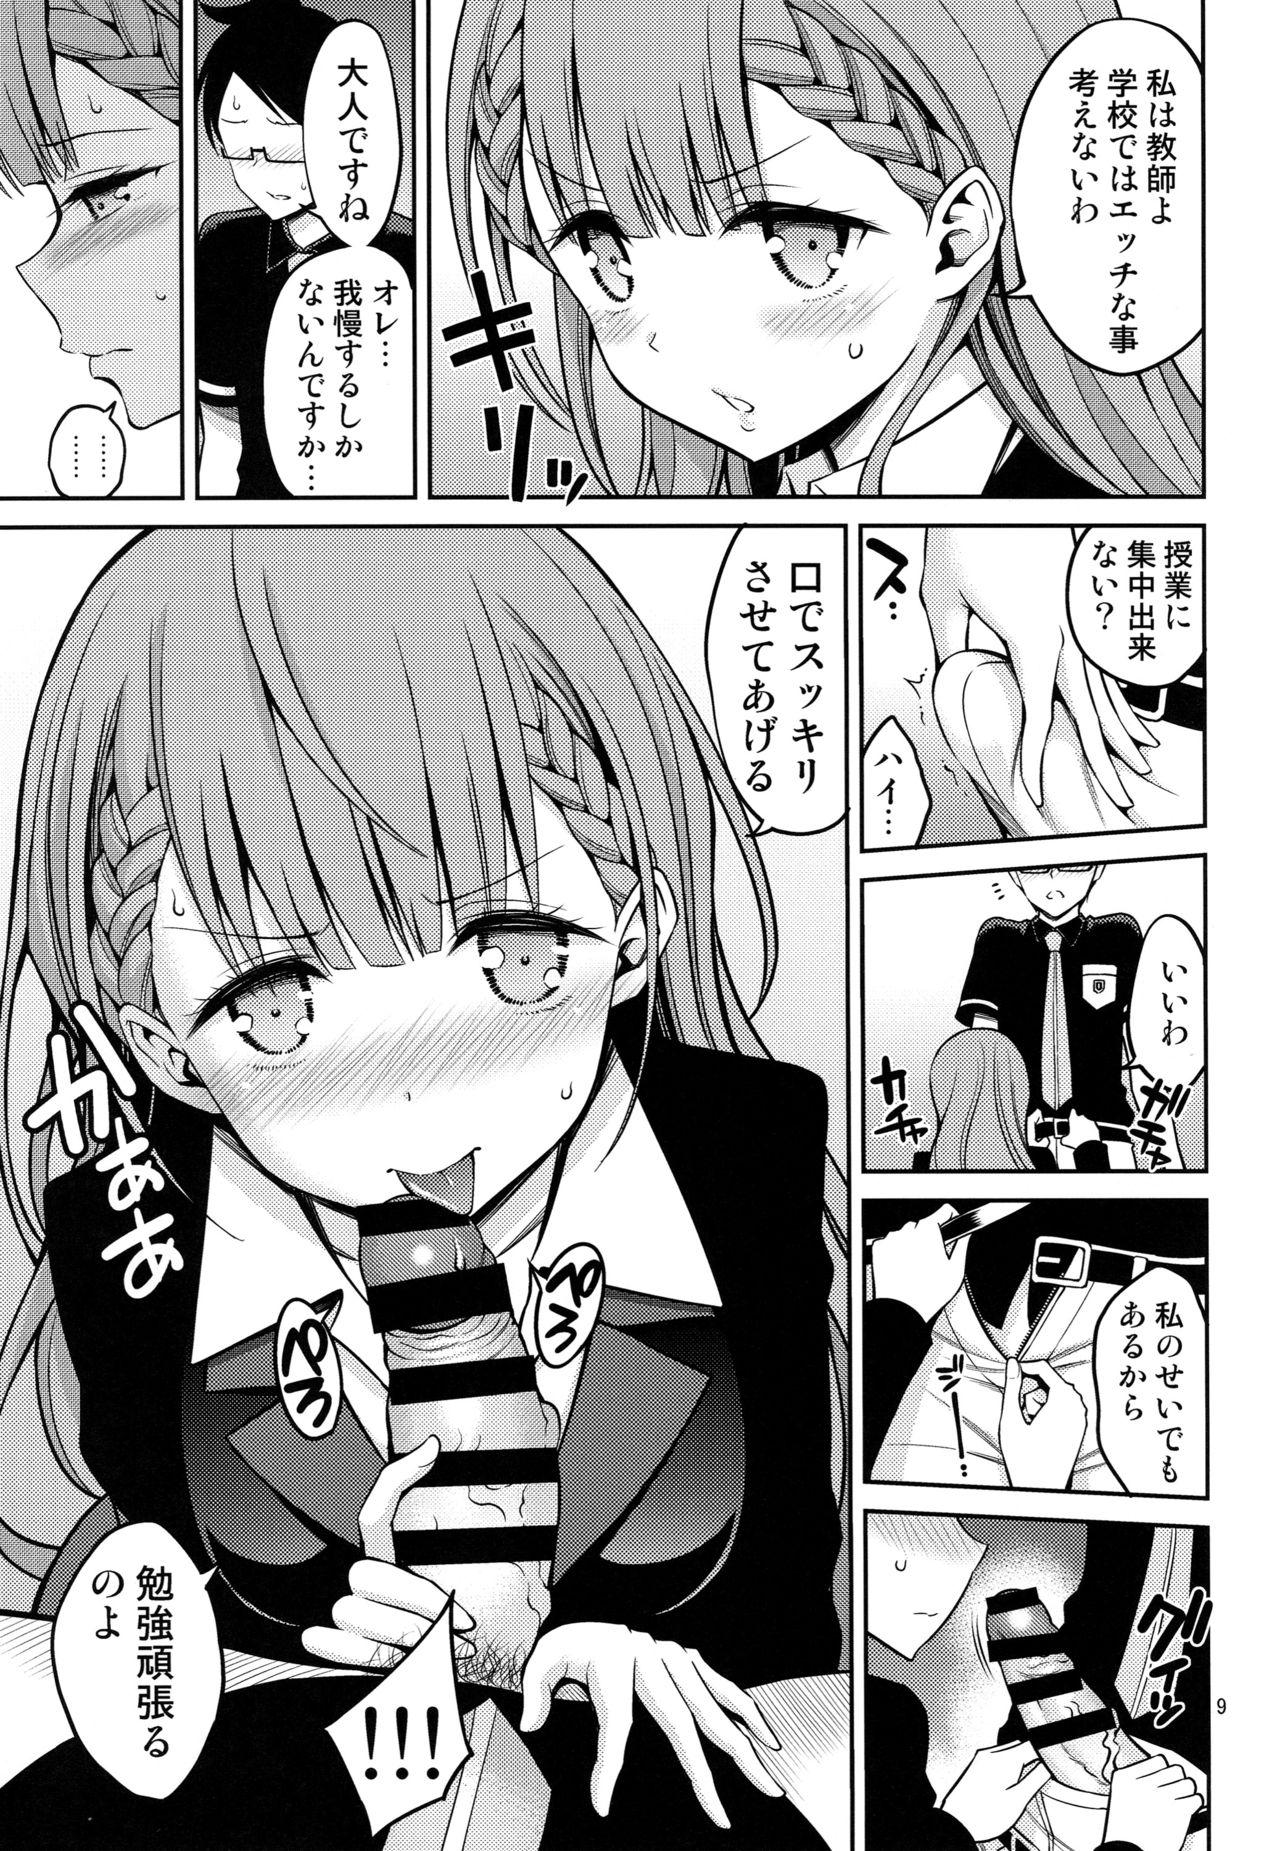 Chichona Kirisu Sensei wa Gaman ga Dekinai - Bokutachi wa benkyou ga dekinai Sperm - Page 8